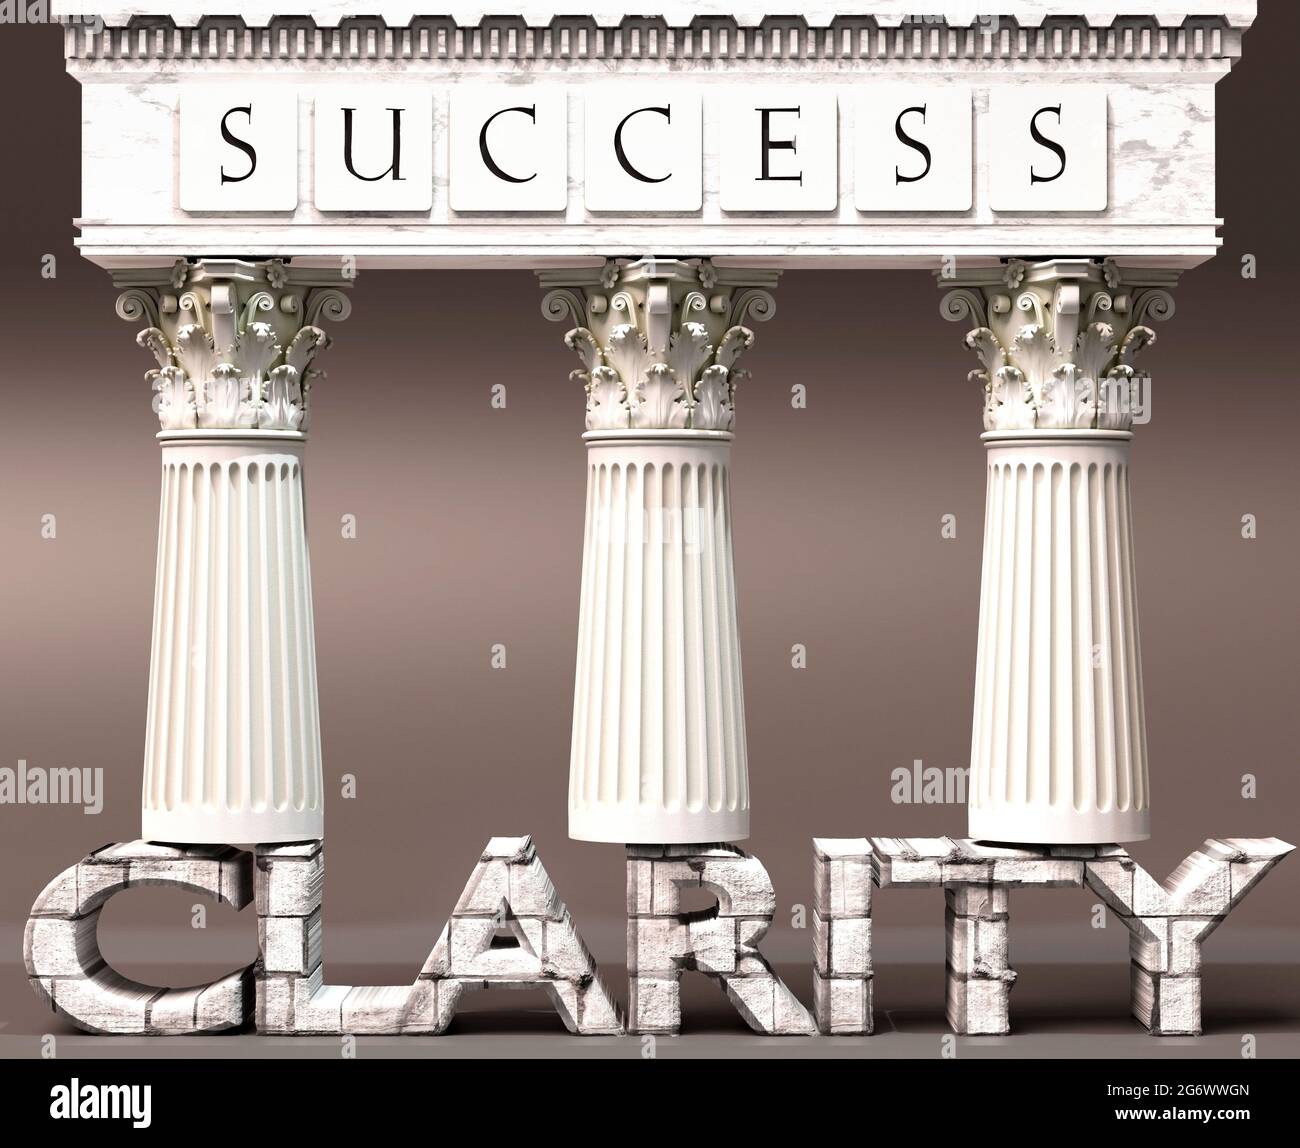 La claridad como base del éxito - simbolizada por los pilares del éxito apoyados por la claridad para demostrar que es esencial para alcanzar metas y alcanzar Foto de stock